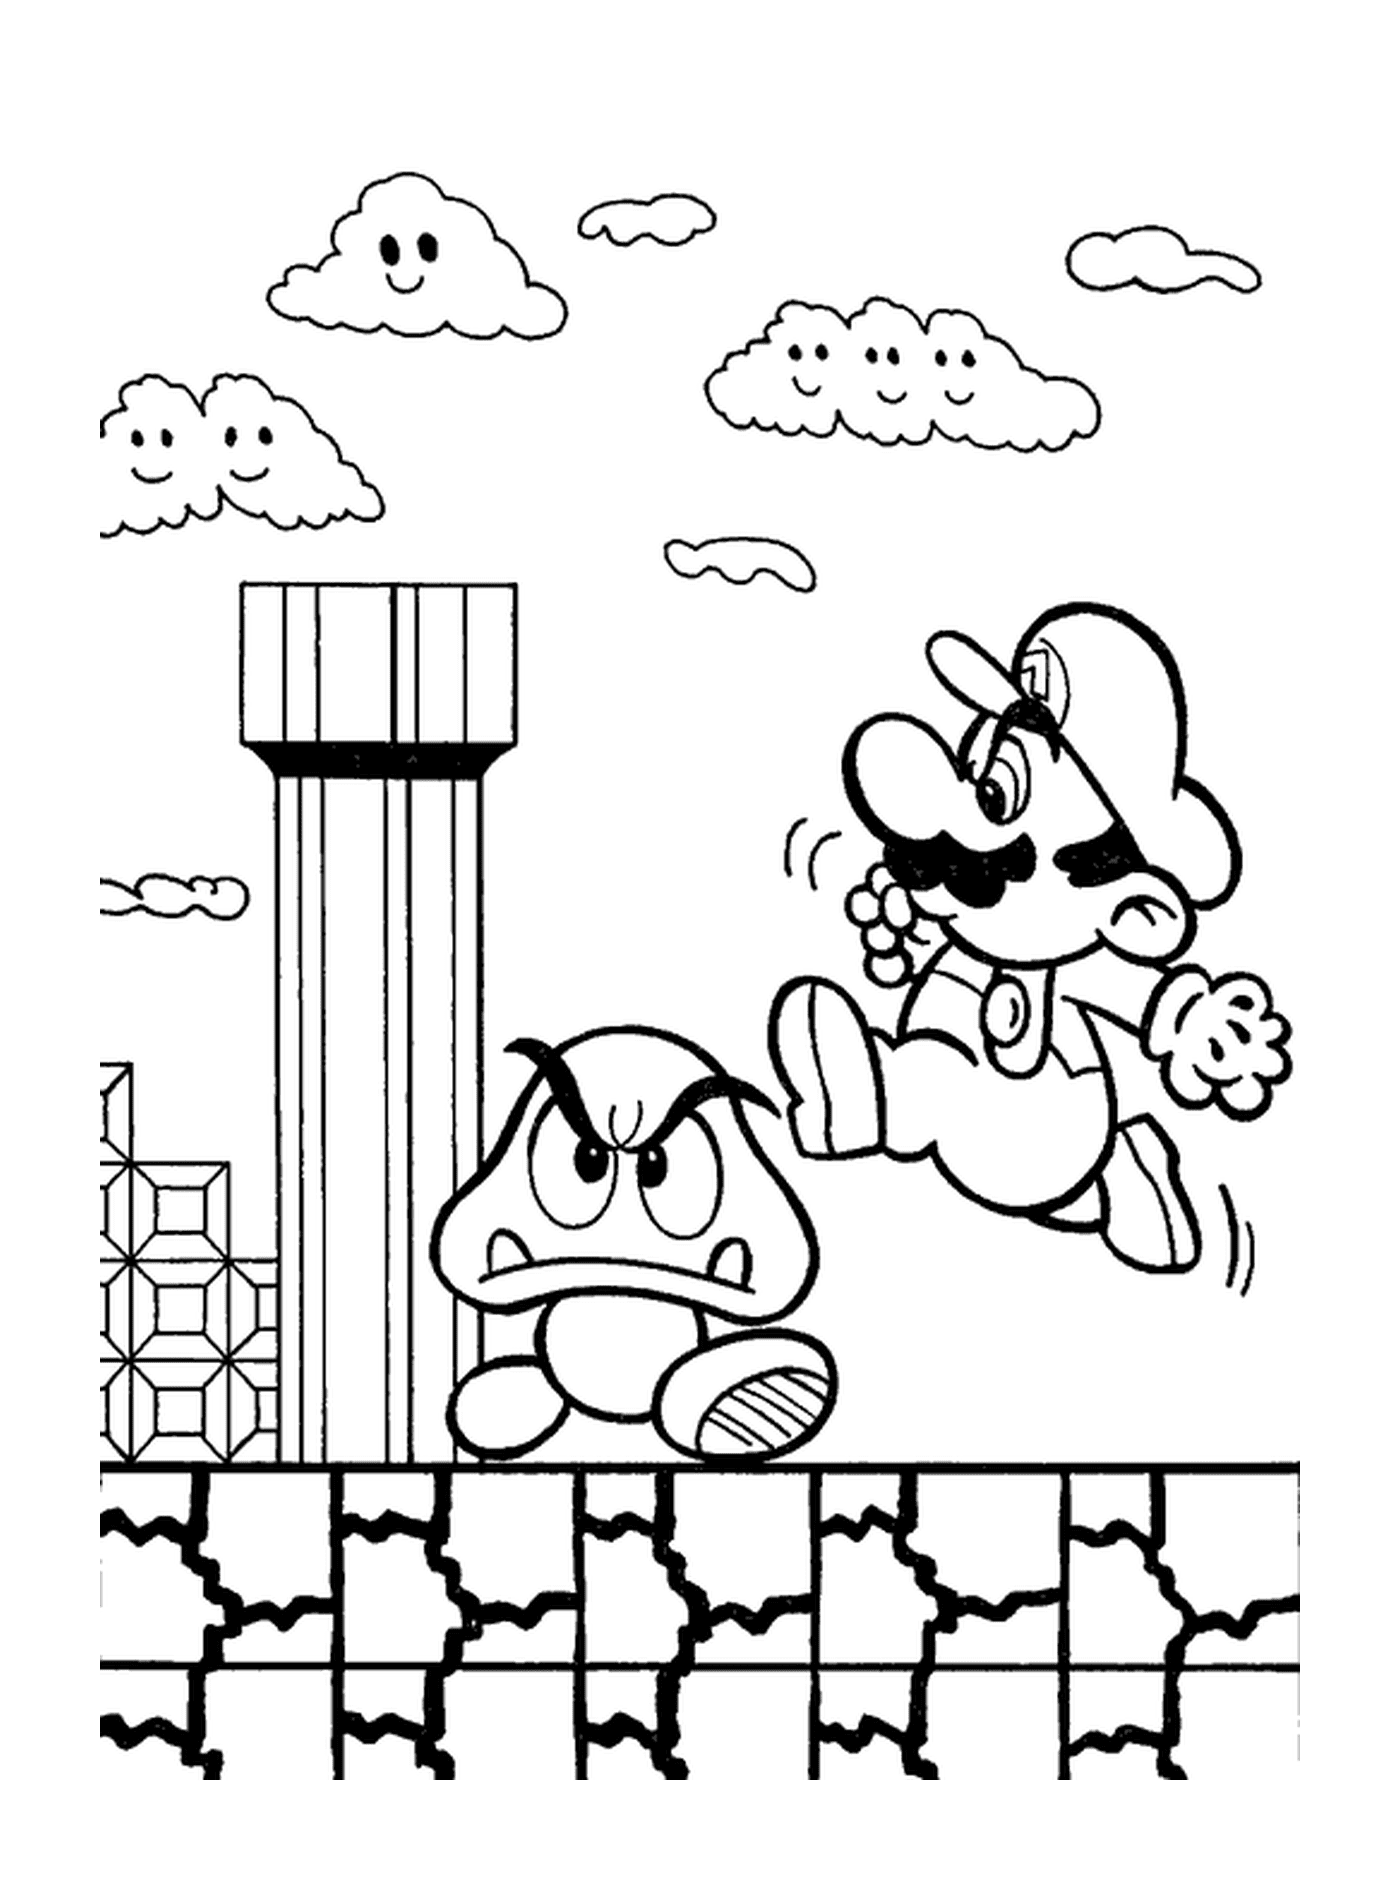  Mario springt auf einen magischen Pilz 